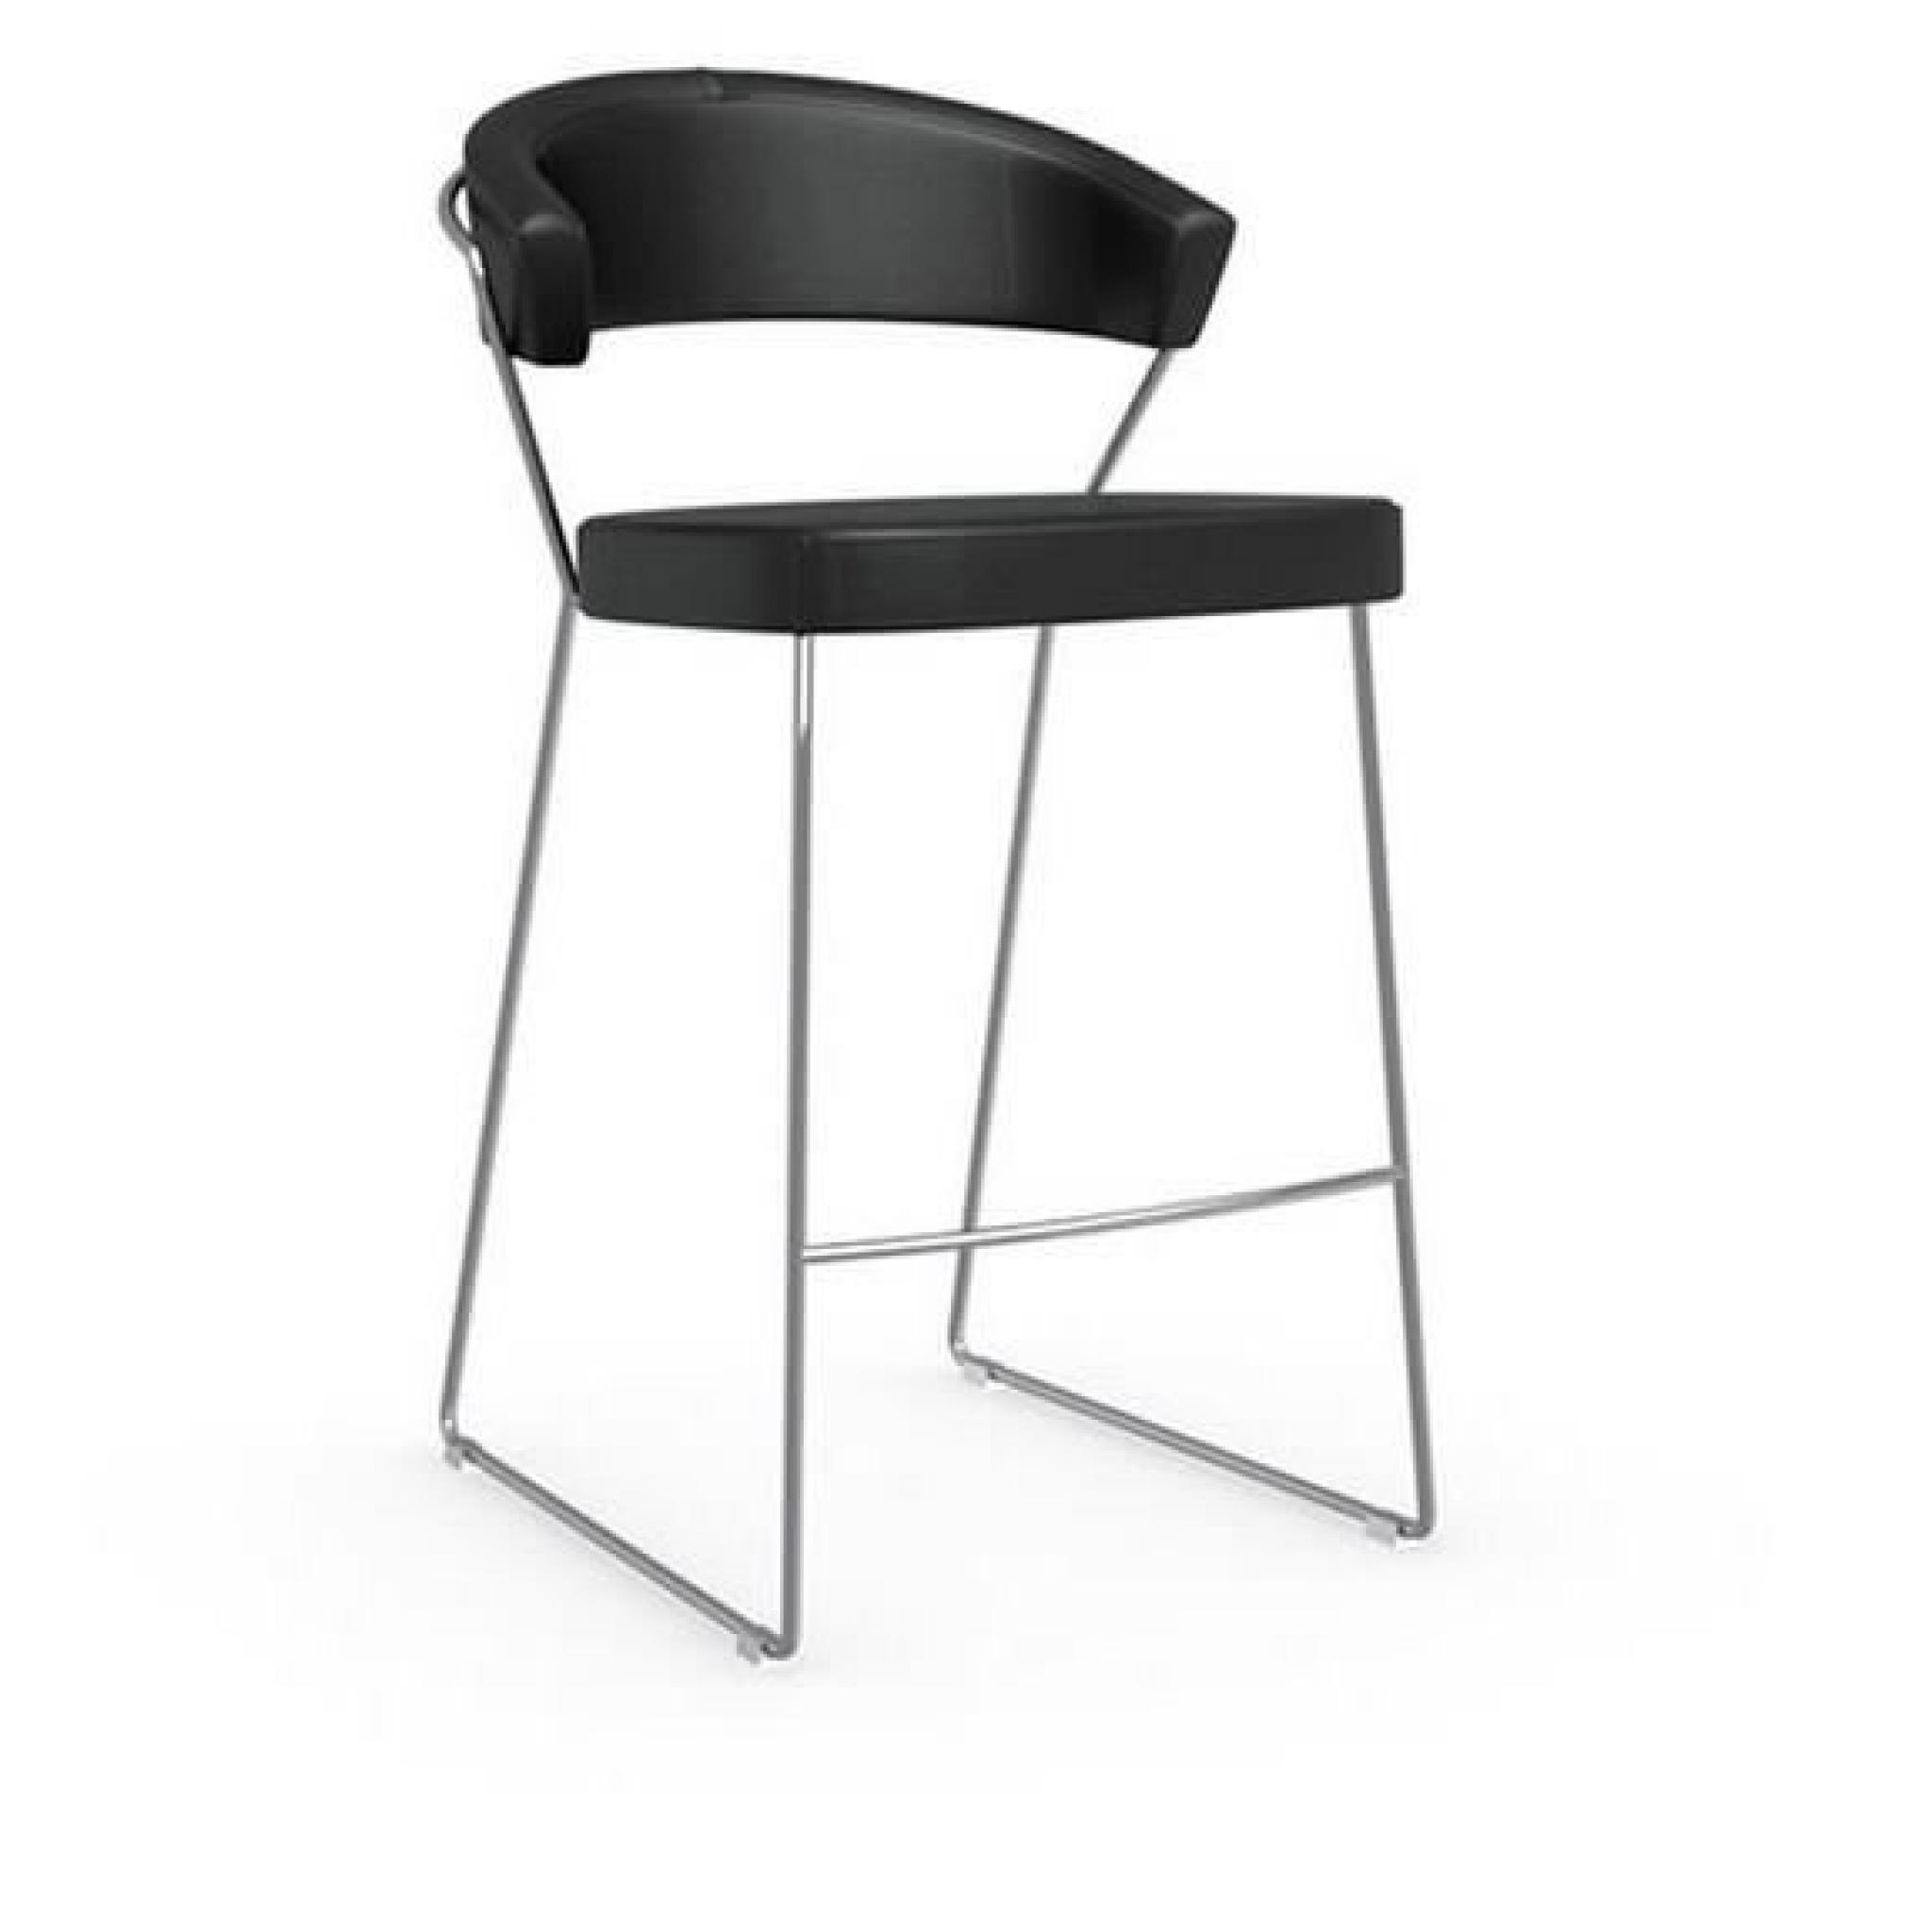 Chaise de bar NEW YORK design italienne de CALLIGARIS structure en acier chromé plusieurs choix de coloris pas cher